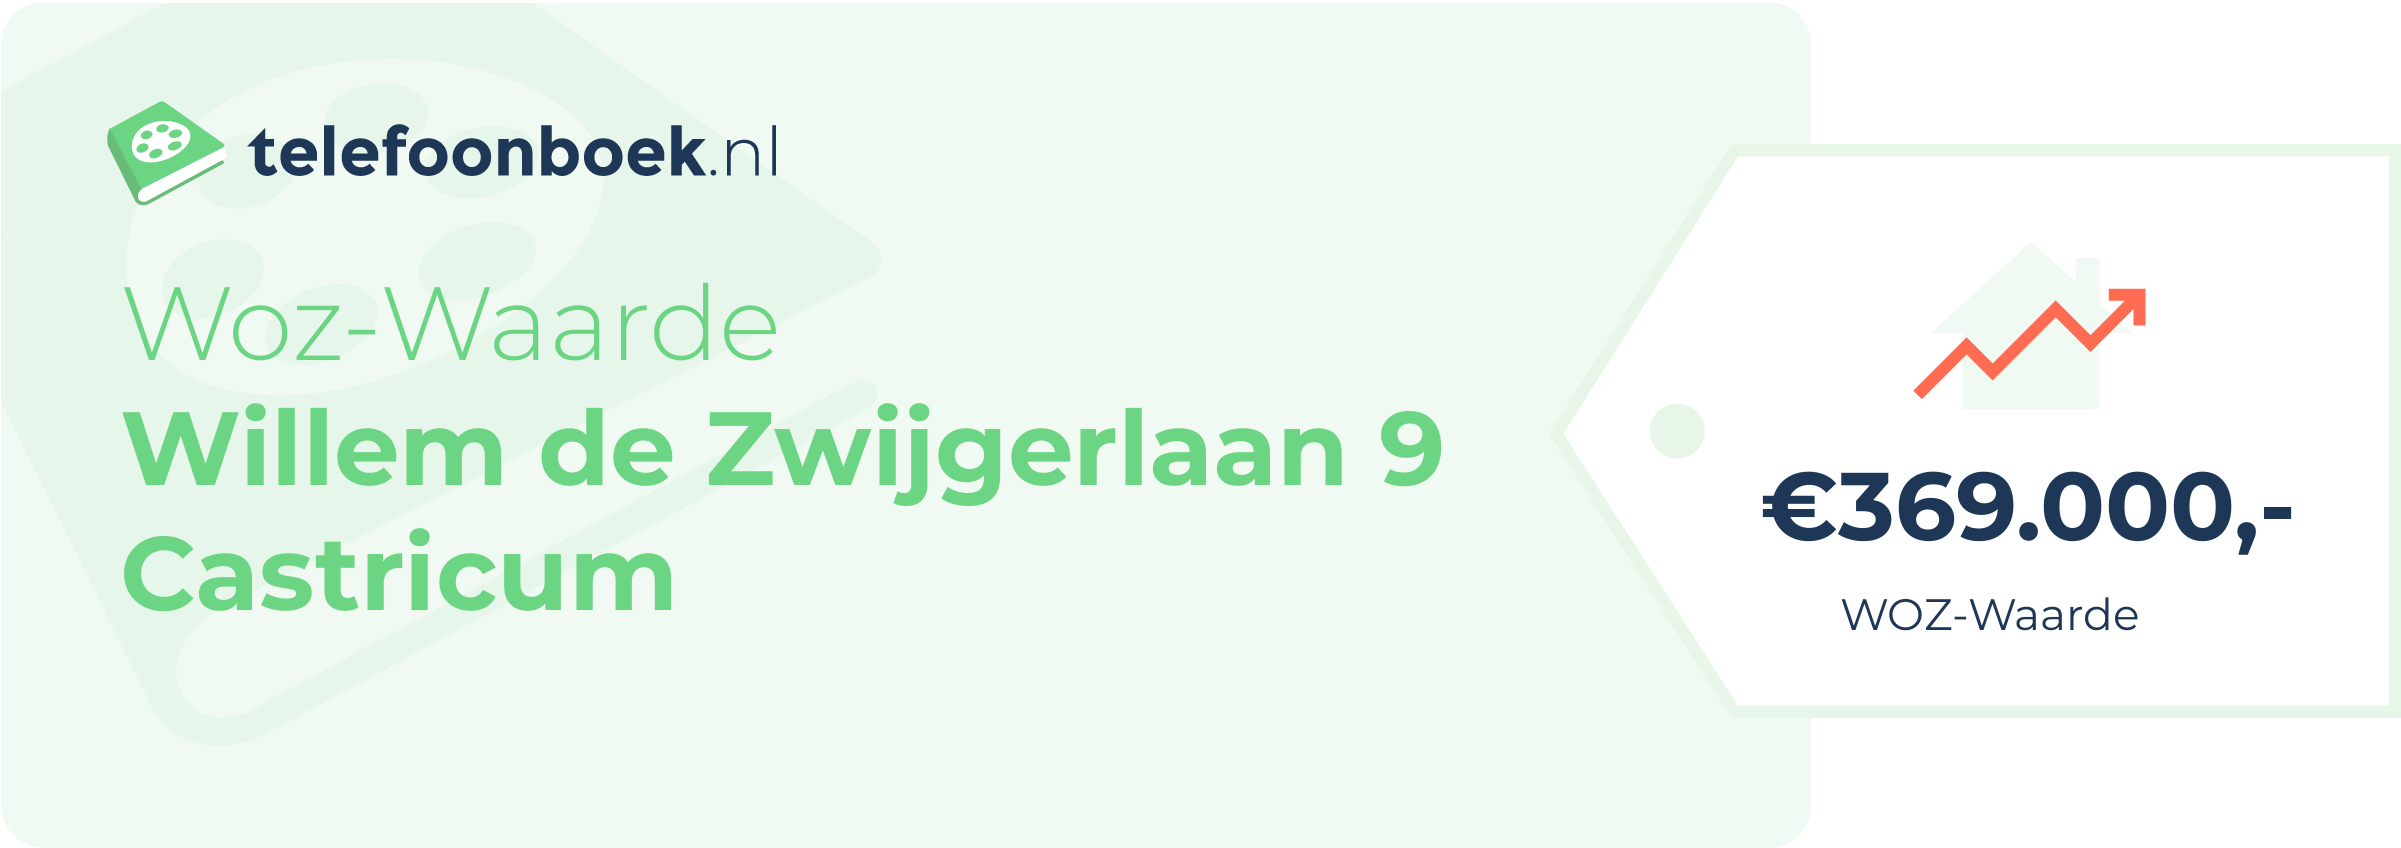 WOZ-waarde Willem De Zwijgerlaan 9 Castricum